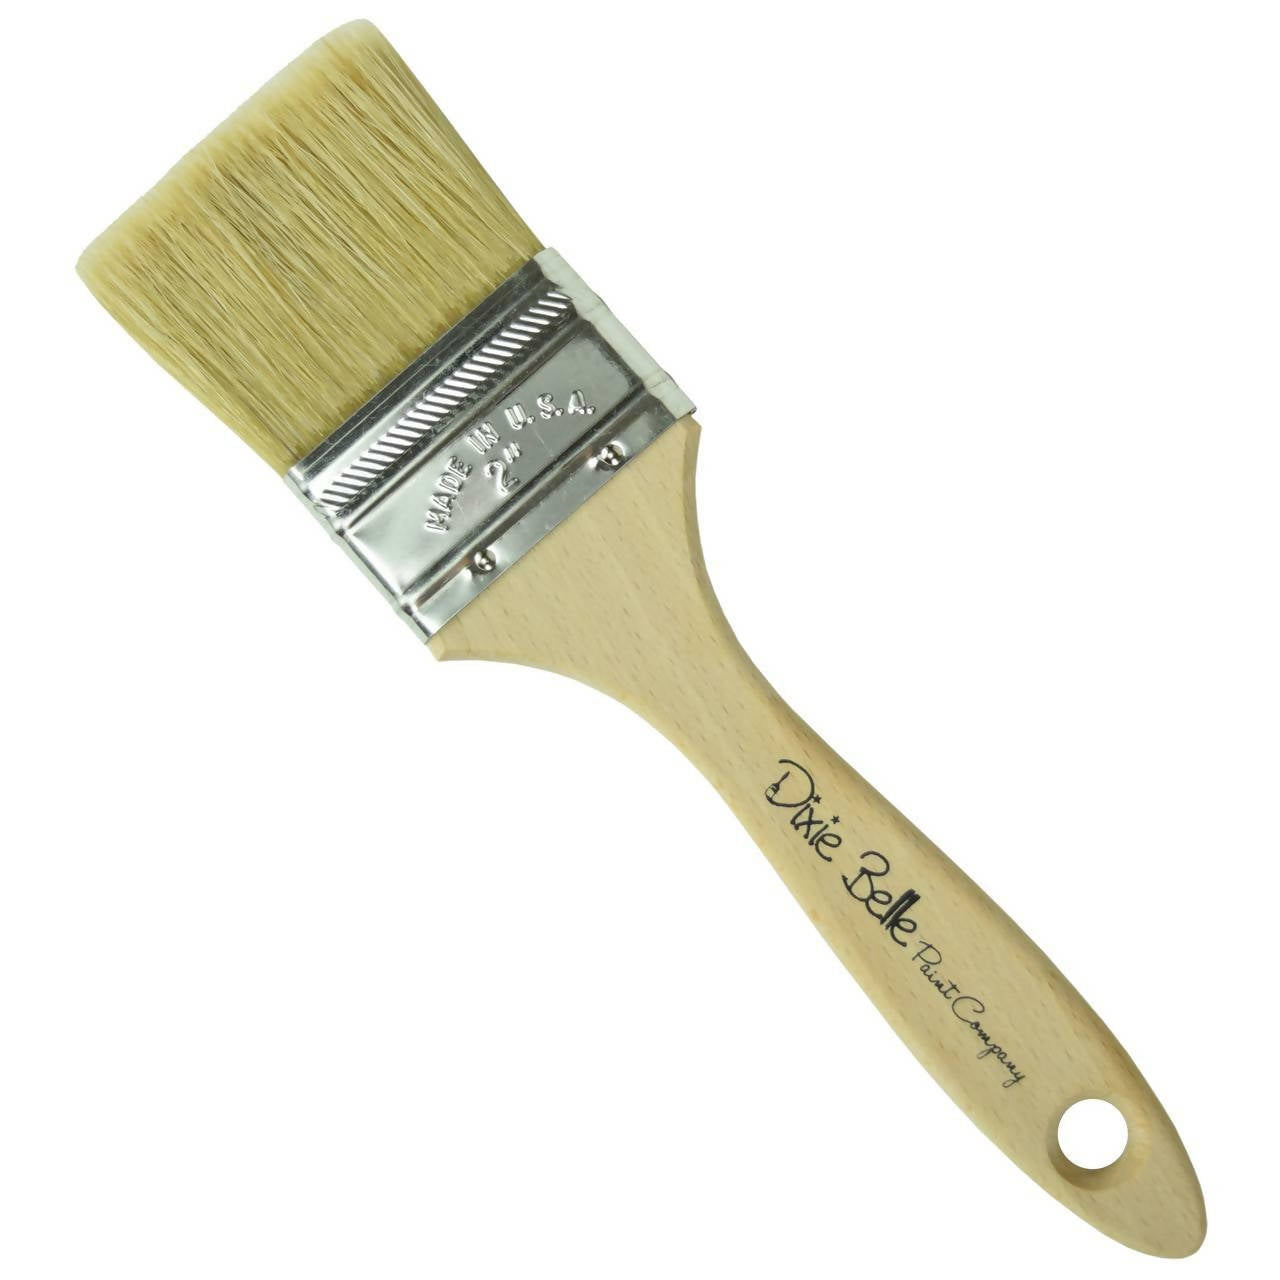 Dixie Belle - Premium Chip Brush